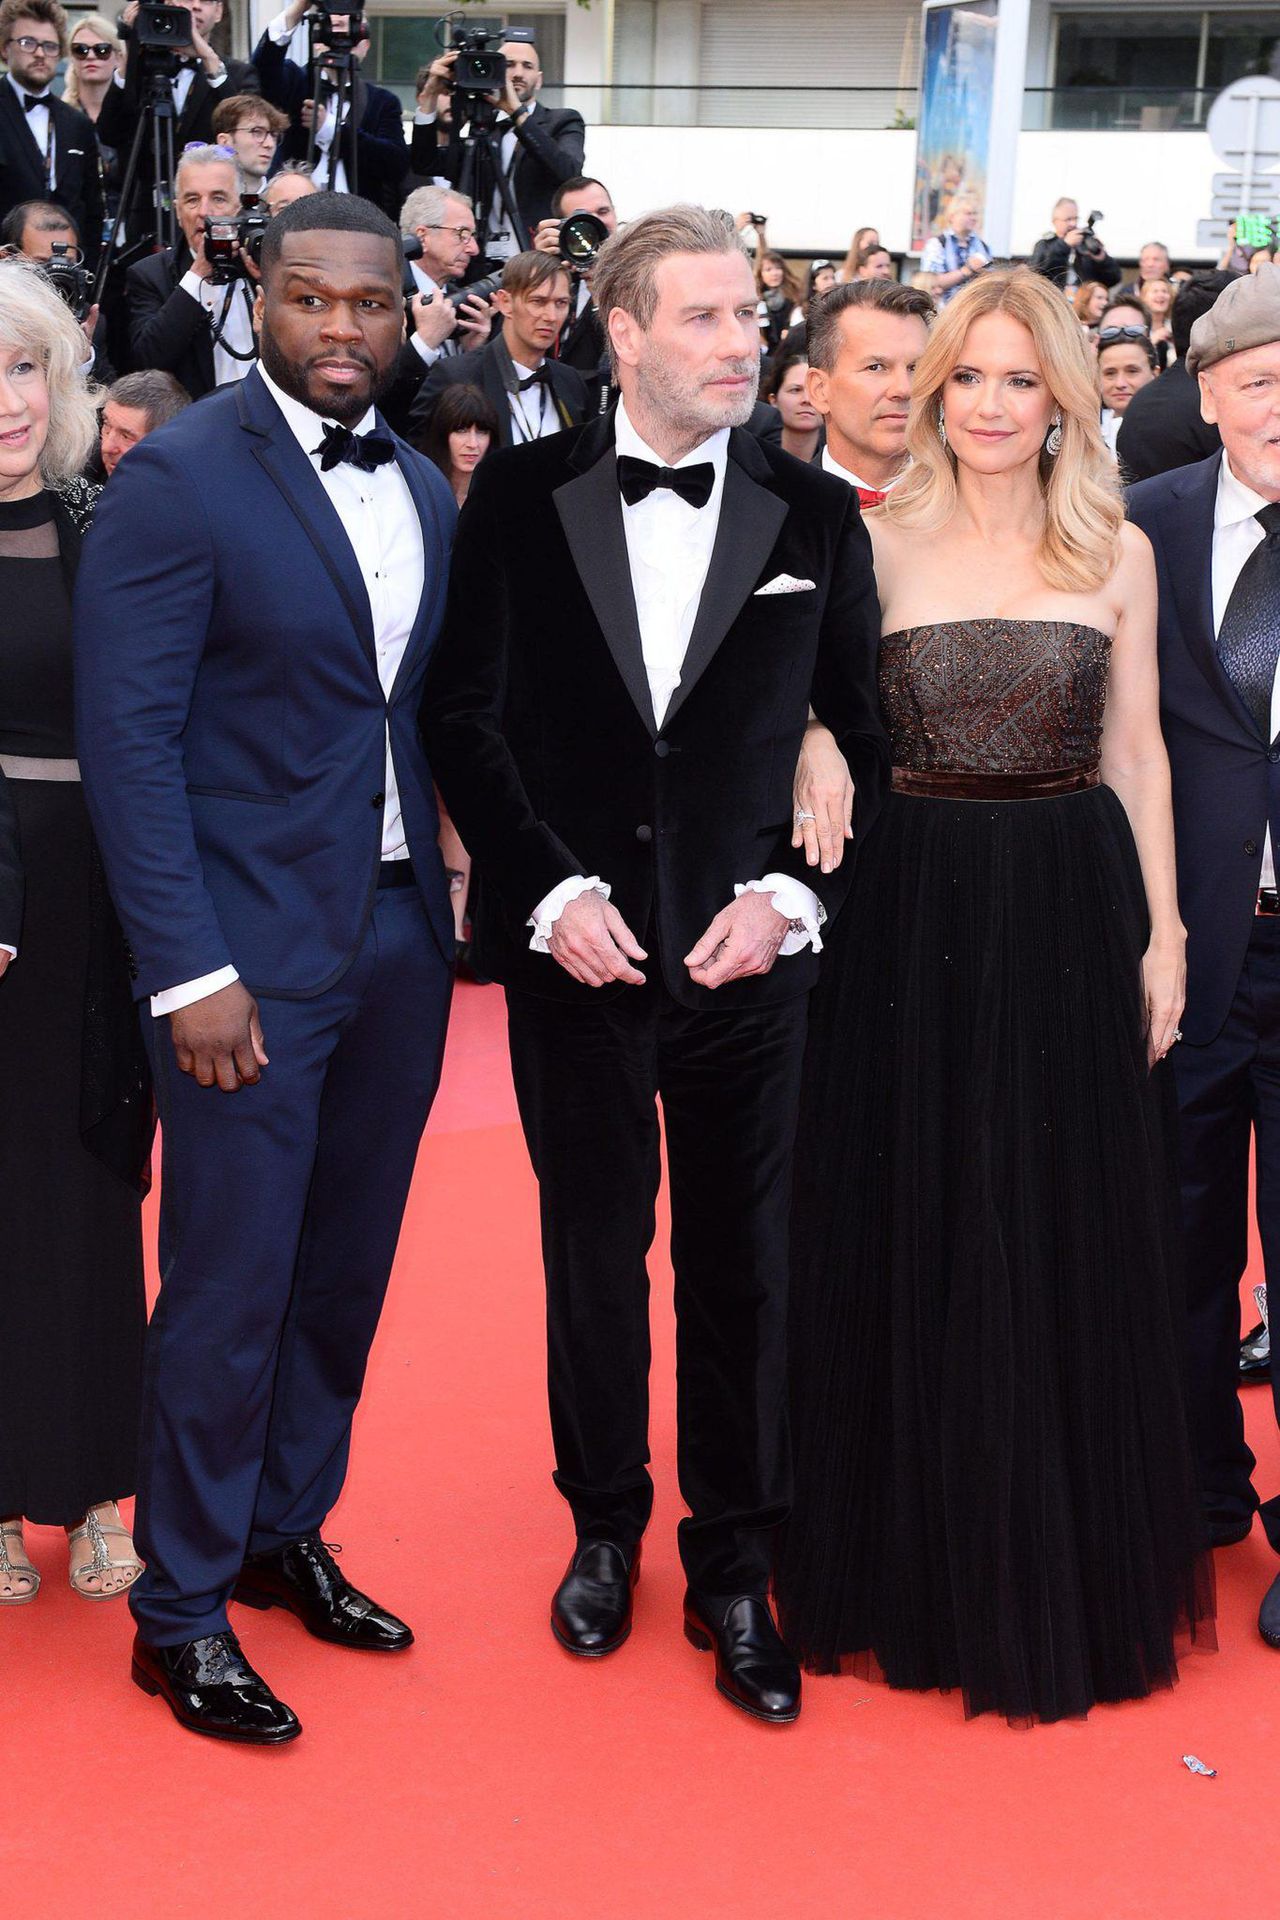 50 Cent, John Travolta, Kelly Preston   - premiera filmu "A Star Wars Story", Cannes 2018